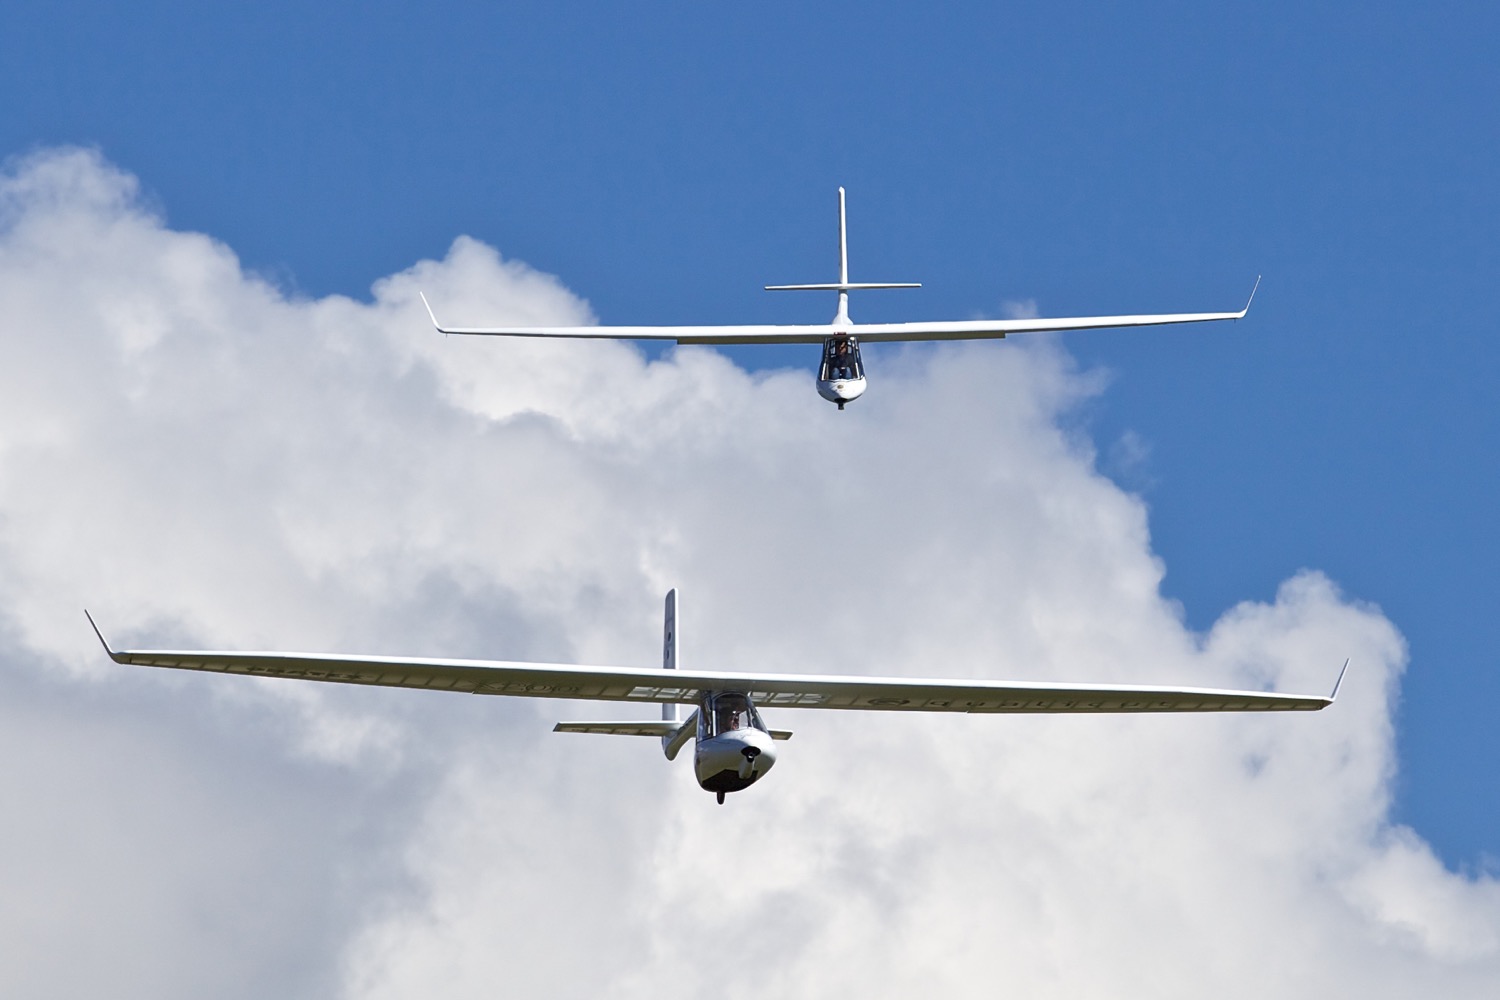 Easy Glider: Natürlicher Geschwindigkeitsbereich (30 – 130 km/h), supergutmütiges Überziehverhalten.